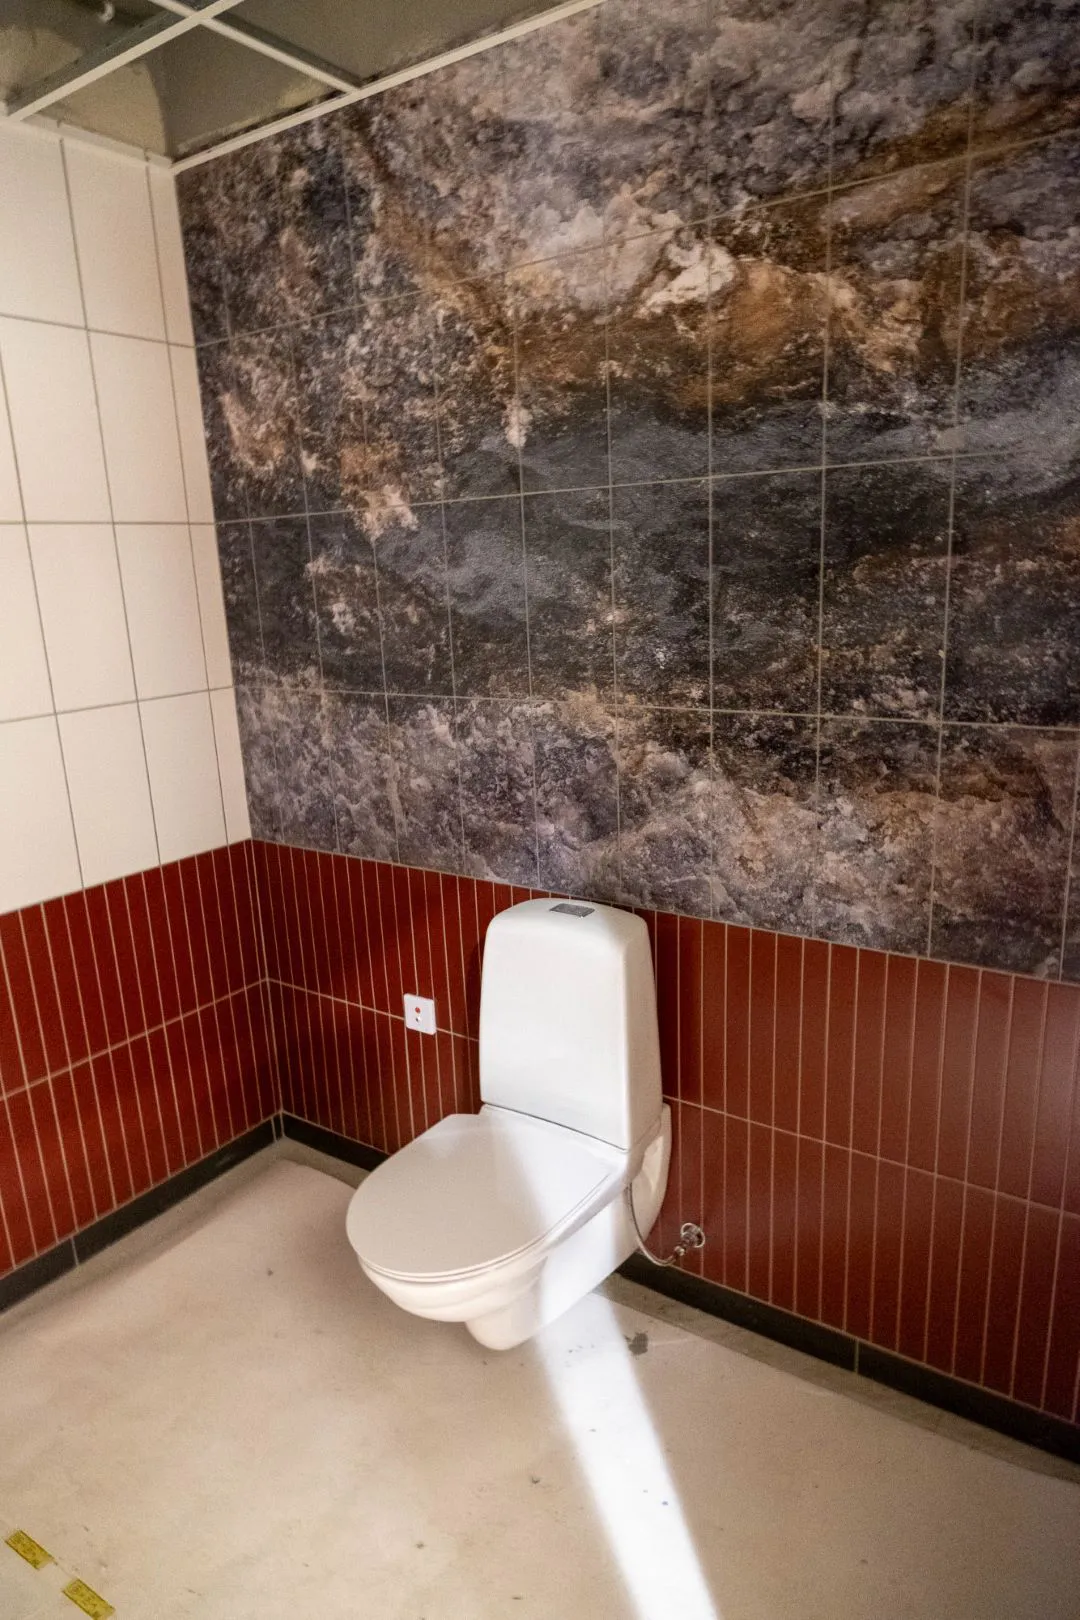 Toalett med rött och vitt kakel. Bakom toaletten är ett väggmotiv med mineraler